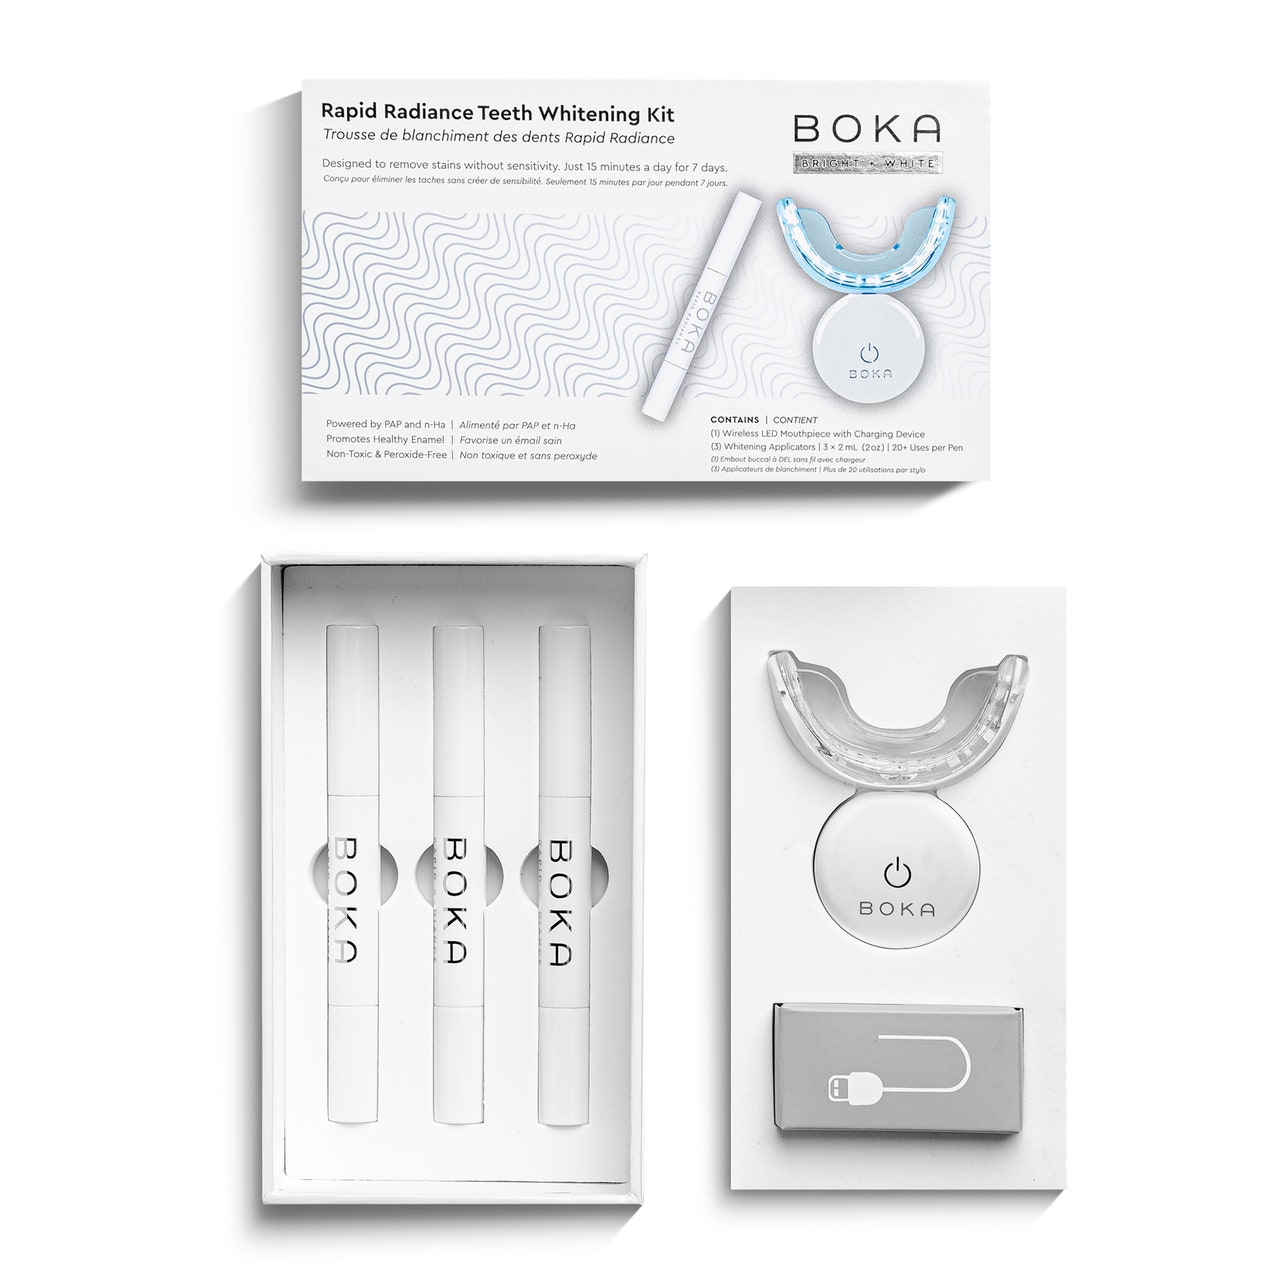 Boka Rapid Radiance Teeth Whitening Kit white teeth whitening supply kit on white background